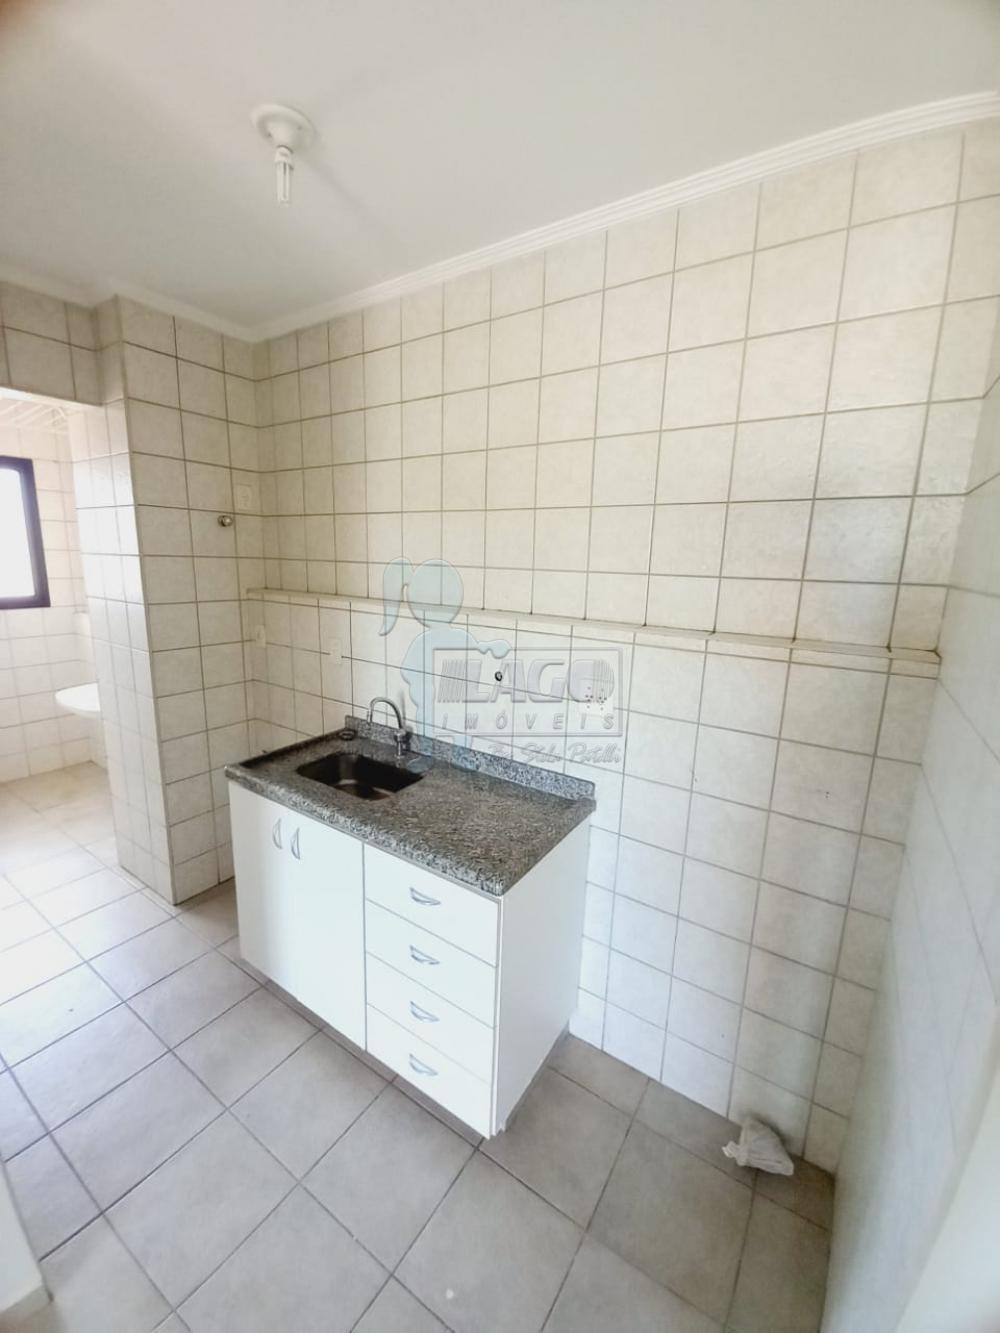 Comprar Apartamento / Padrão em Ribeirão Preto R$ 215.000,00 - Foto 5